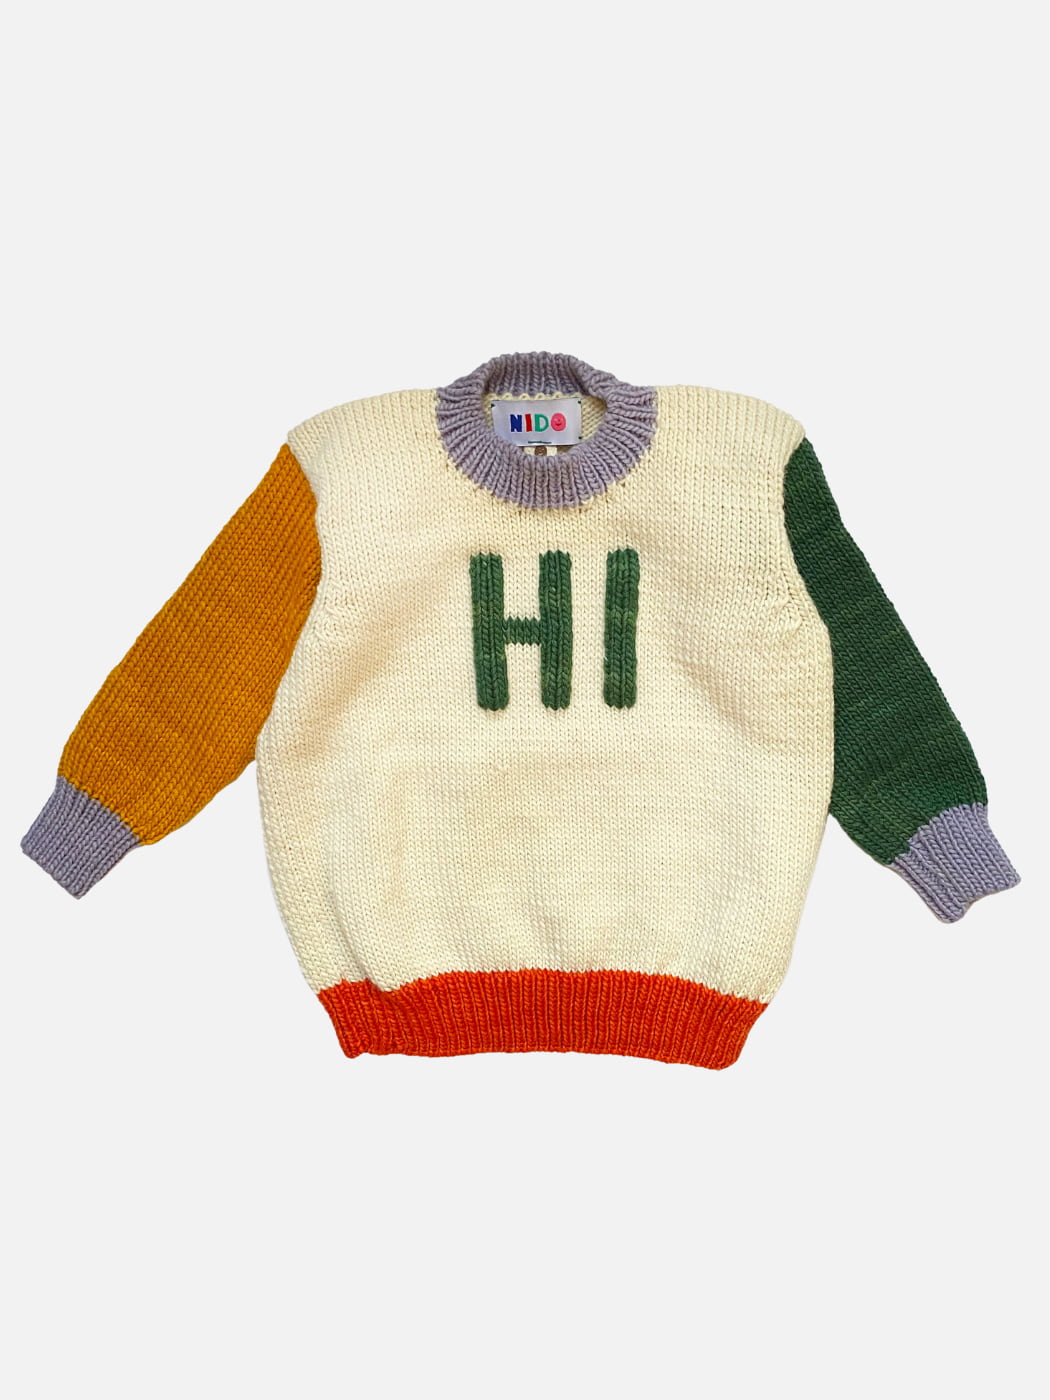 Hi Sweater - Merino Wool